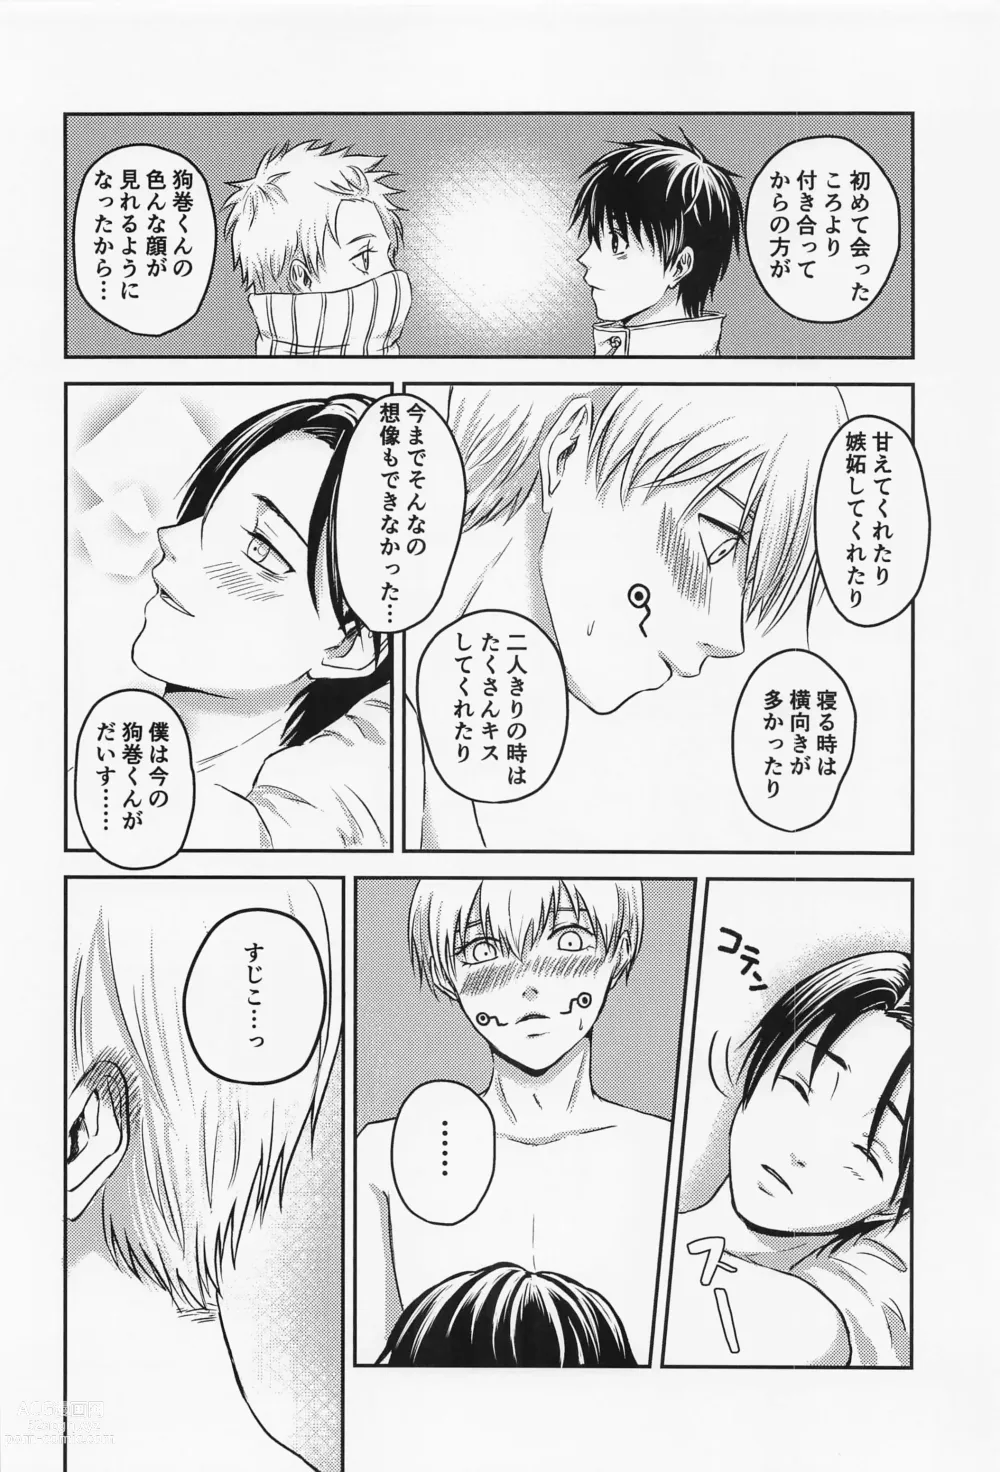 Page 37 of doujinshi Nando demo